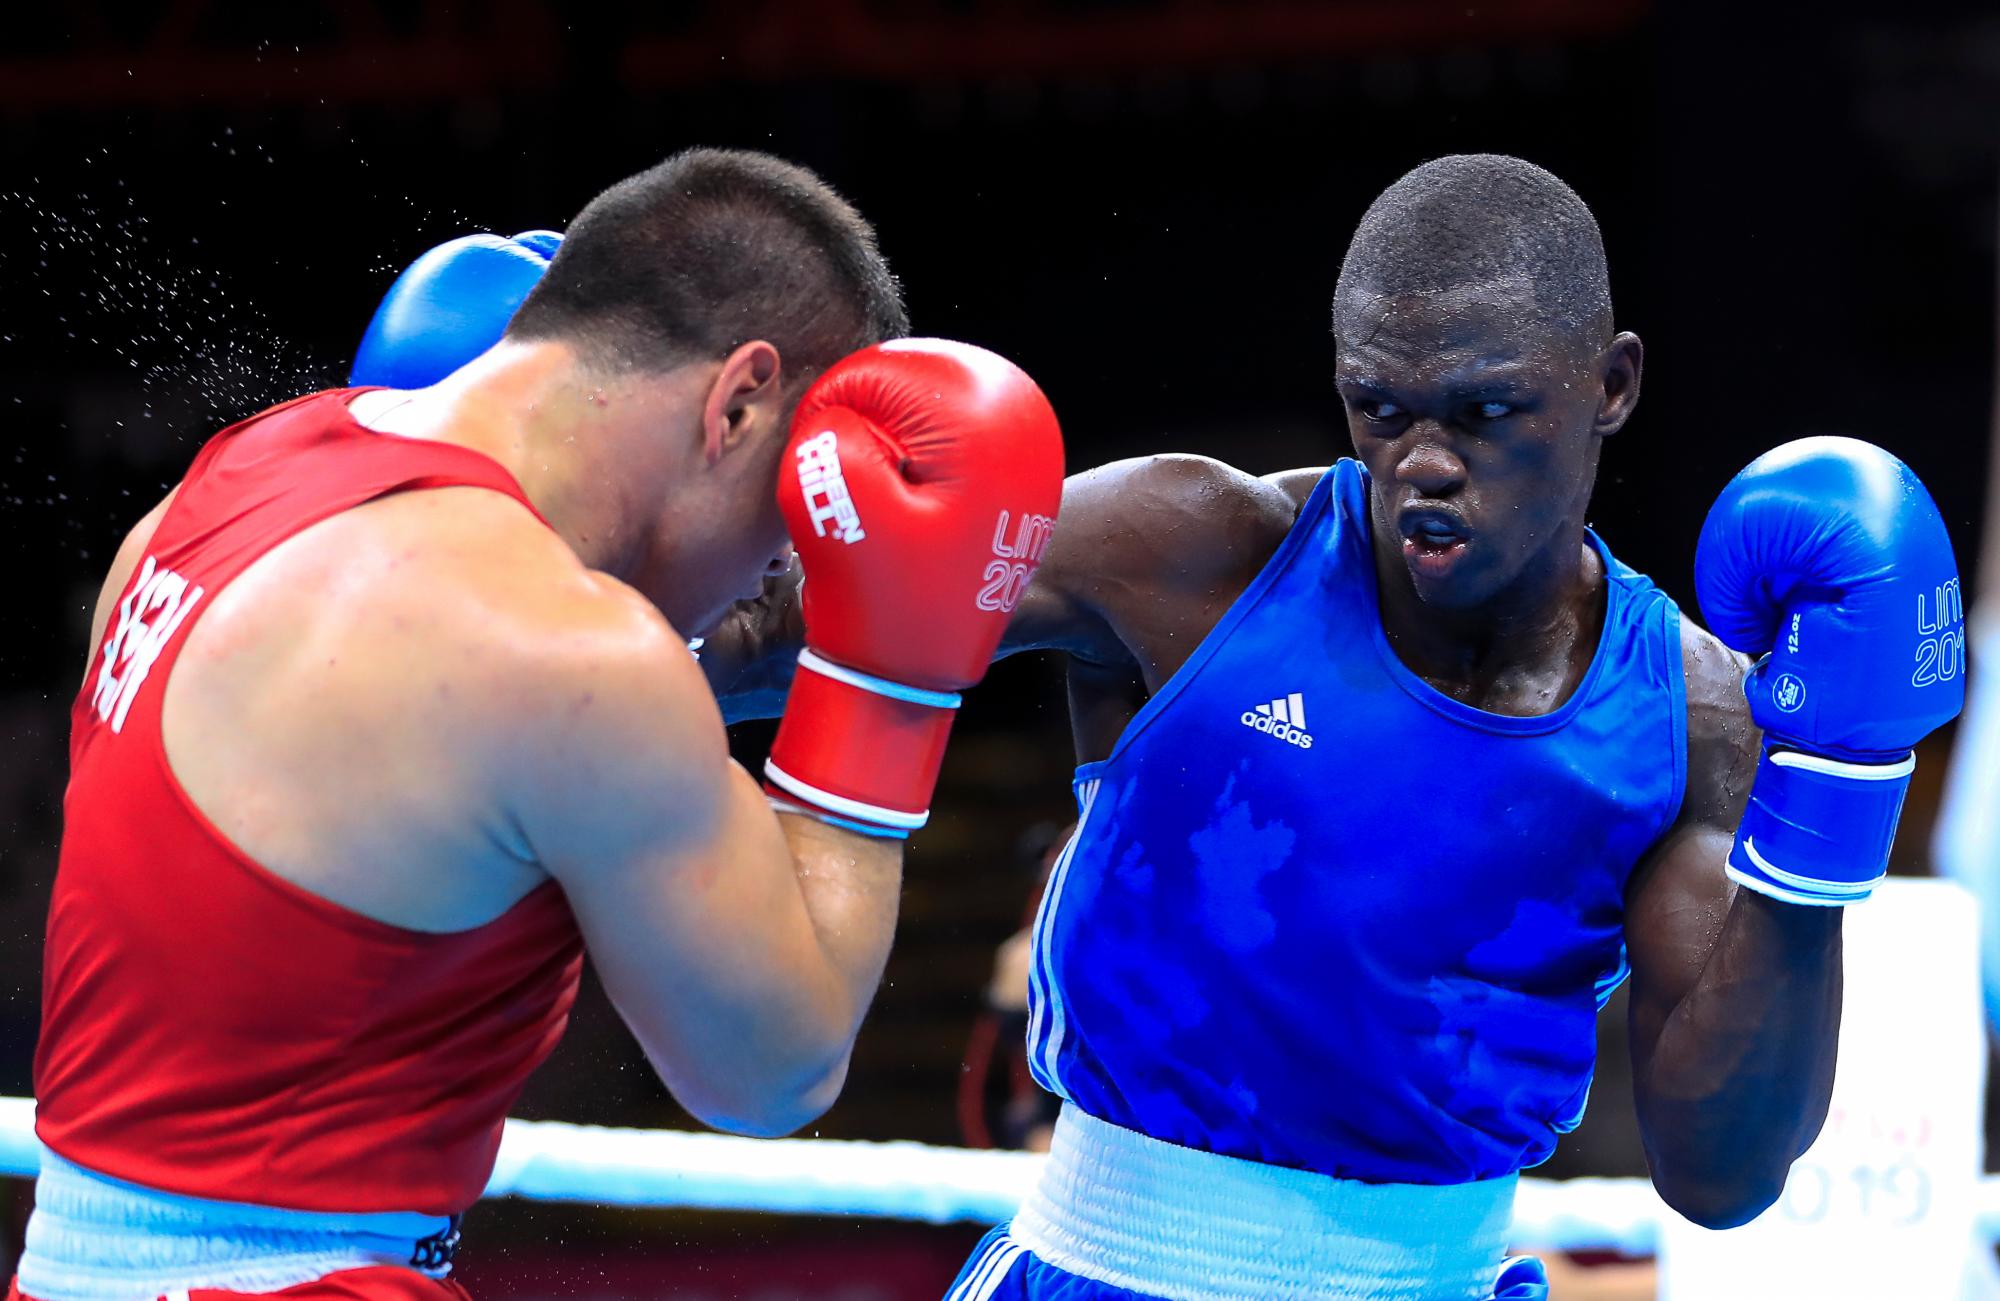 Luis Georges, en azul de República Dominicana, compite con Nalek Korbaj, en rojo, de Venezuela, en un combate de boxeo, categoría pesada, durante los Juegos Panamericanos Lima 2019 en Villa Deportiva Regional del Callao